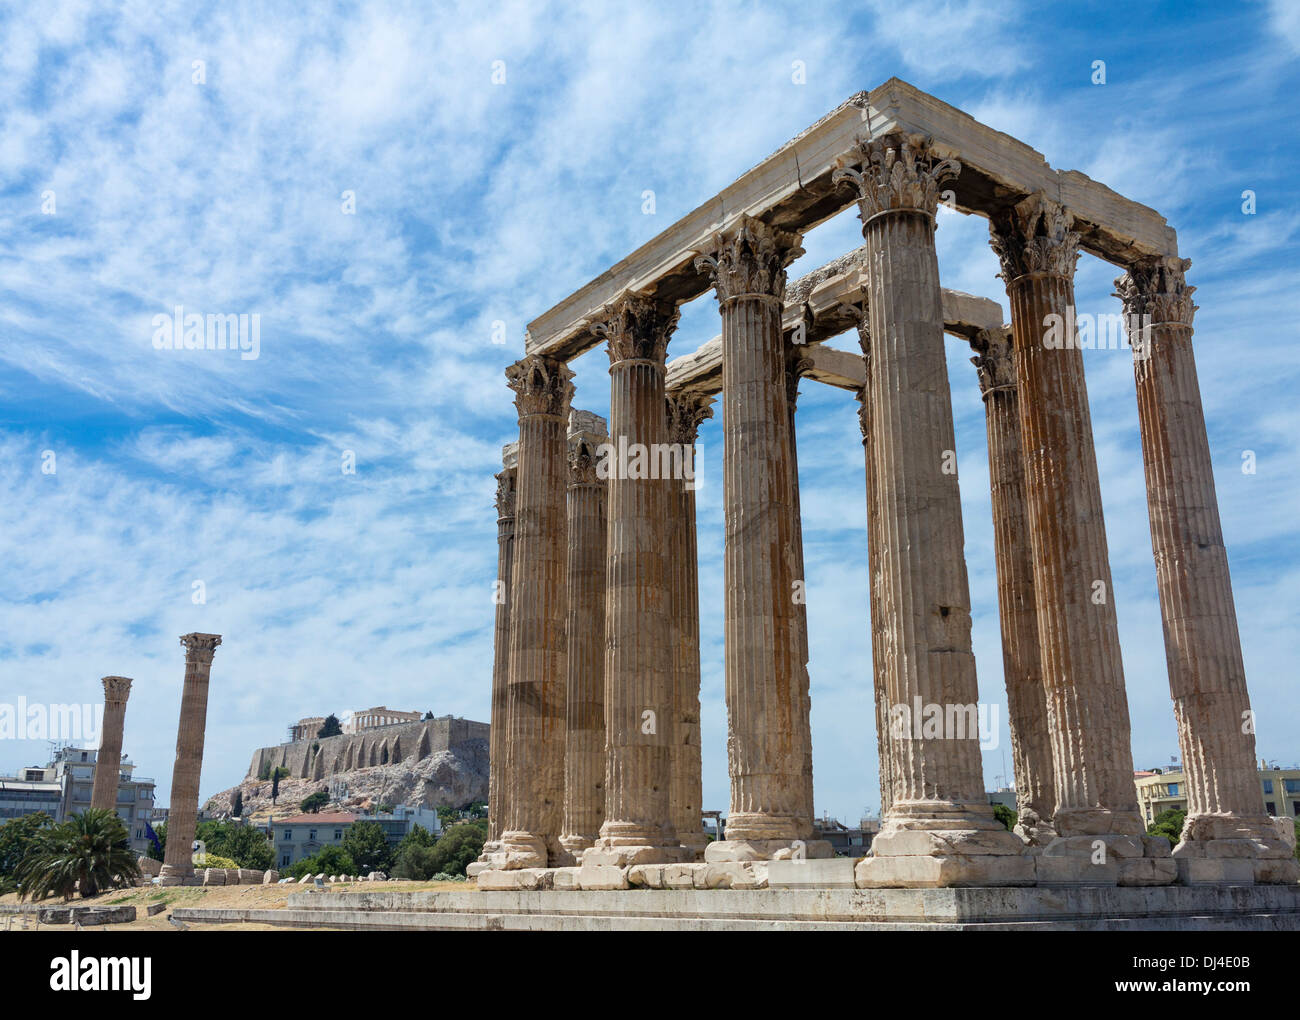 La Grèce antique - Le Temple de Zeus Olympien / Olympieion, Athènes, Grèce - avec l'Acropole derrière Banque D'Images